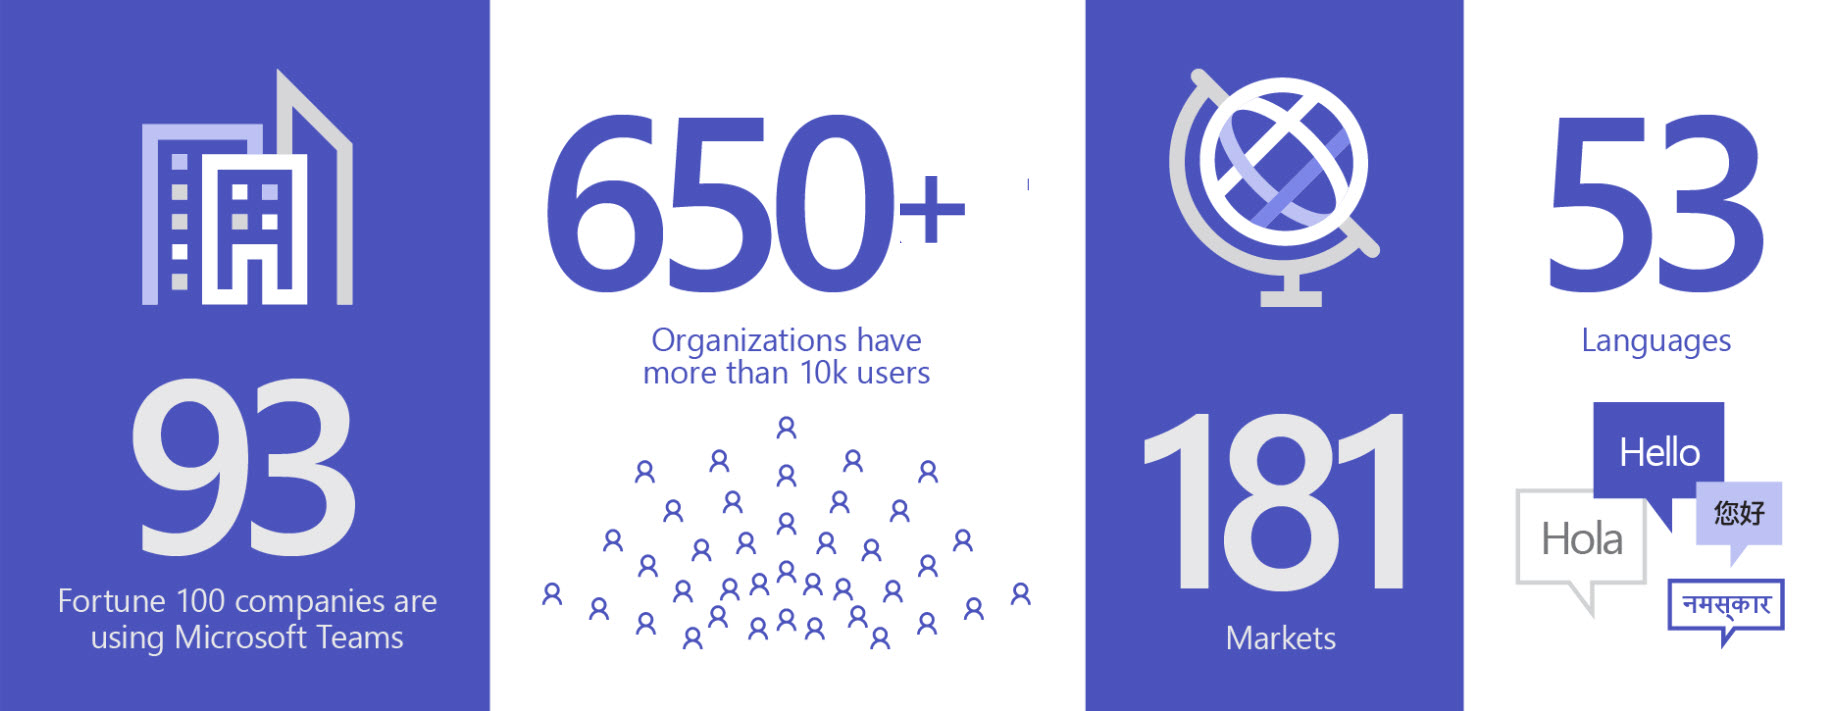 Pilt, millel on kuvatud 93 Teamsi kasutavat asutust, 650 + asutusel on rohkem kui 10K kasutajat, 181 turul ja 53 keeles.